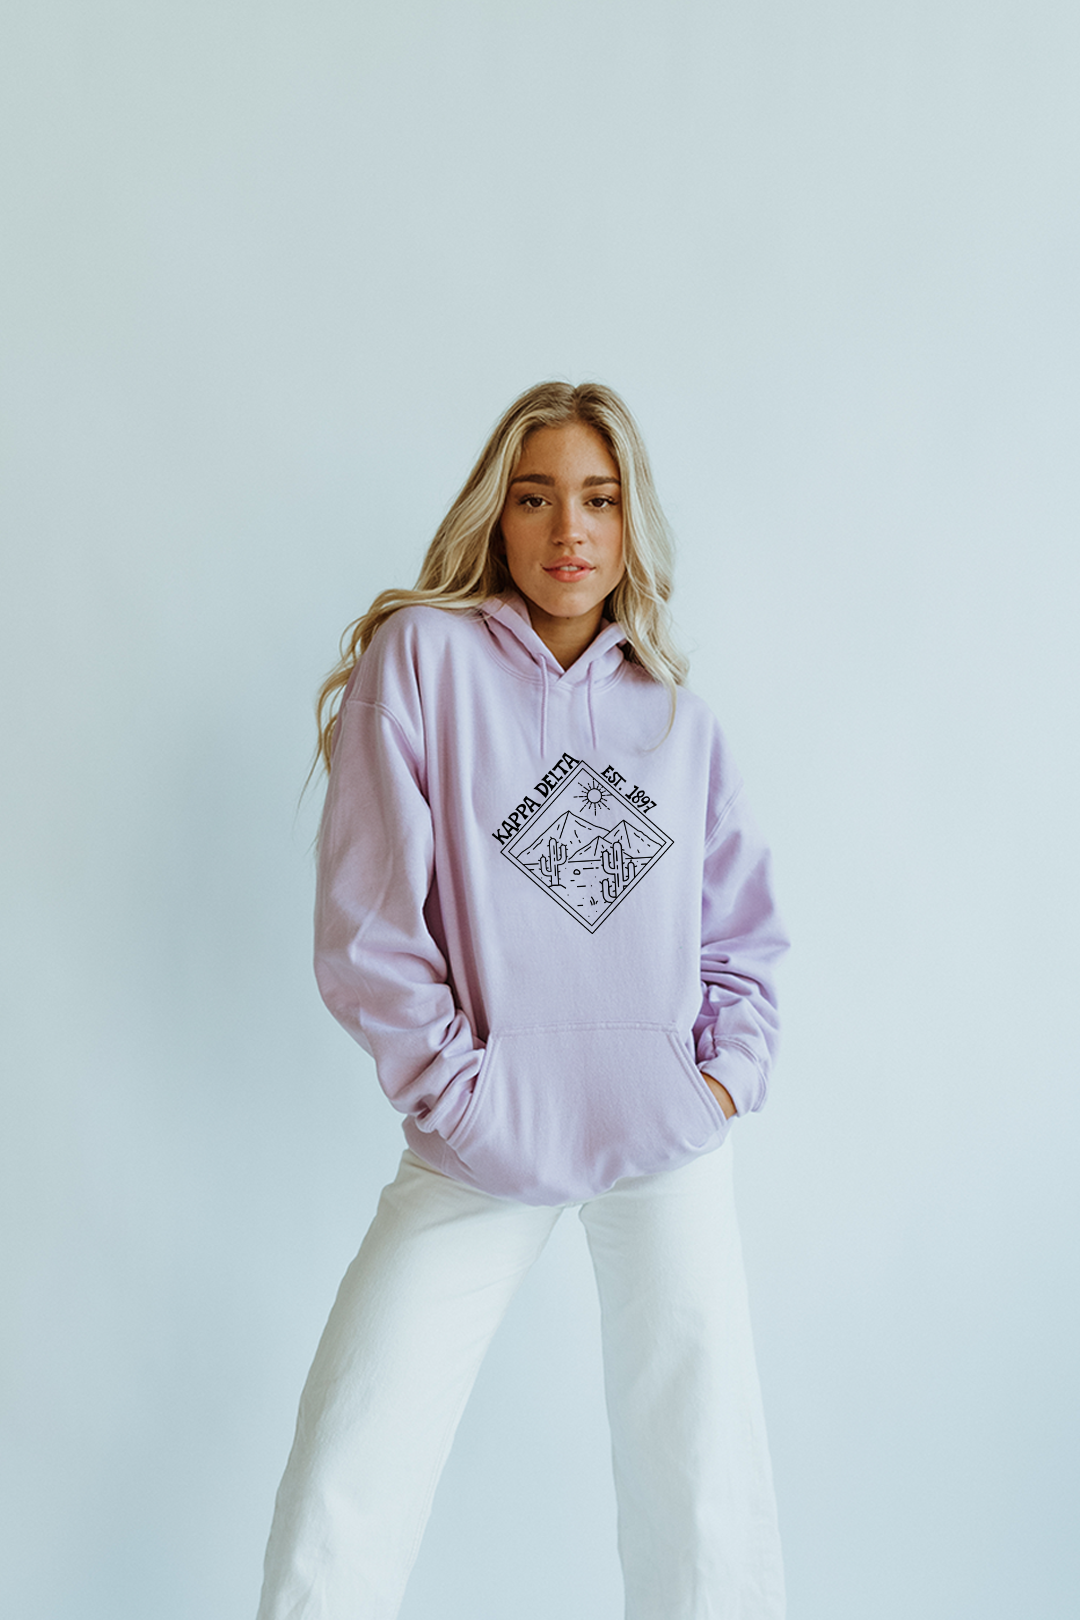 Lavender hoodie - Kappa Delta